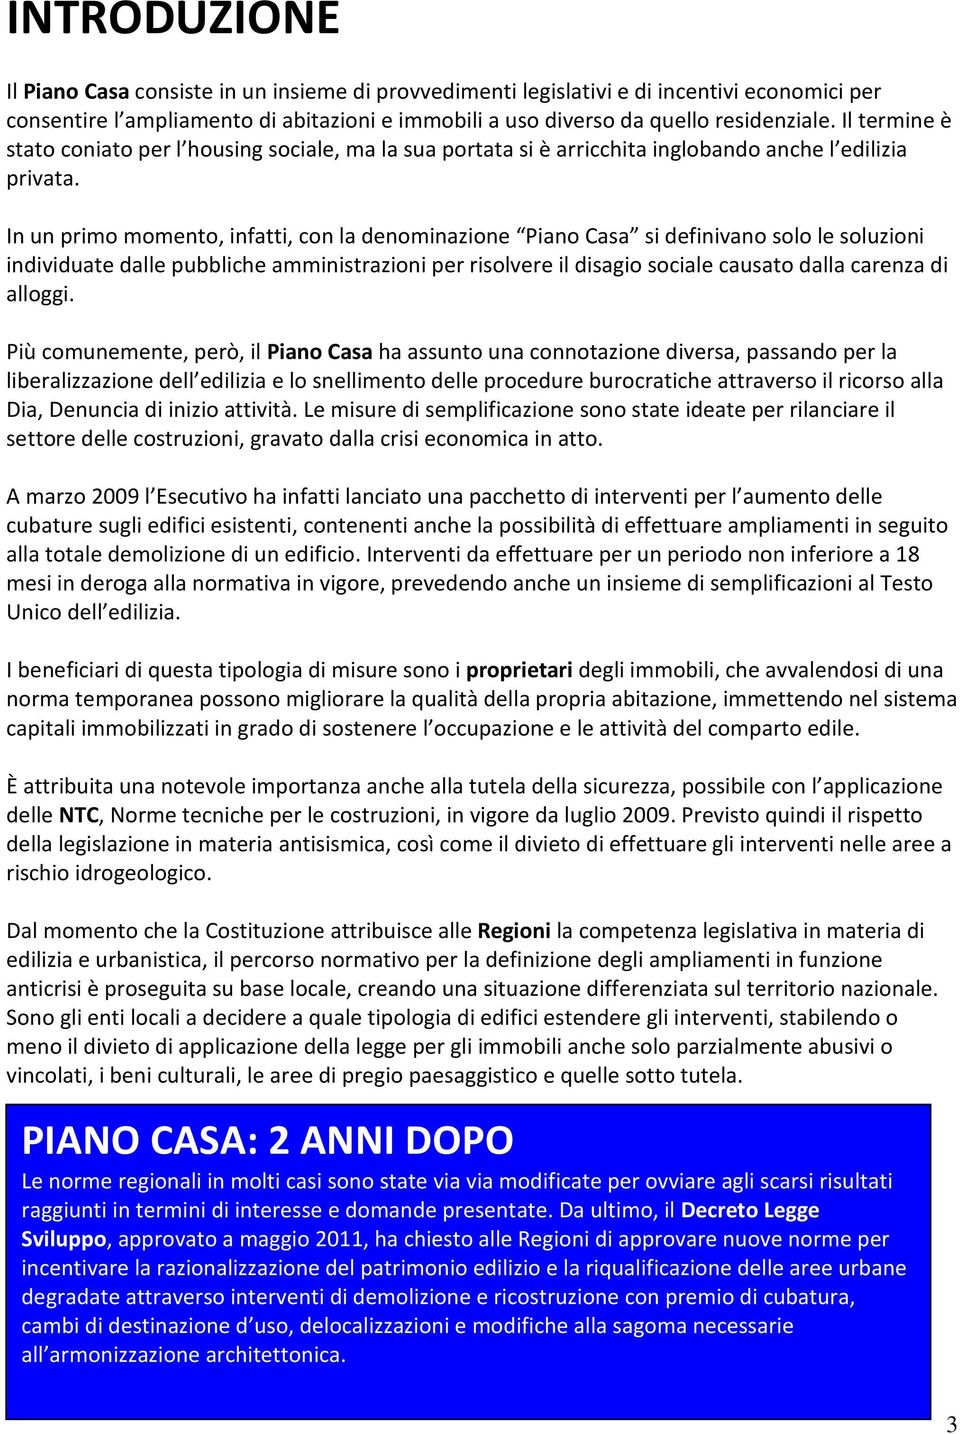 Guida Al Piano Casa Della Regione Calabria Pdf Free Download